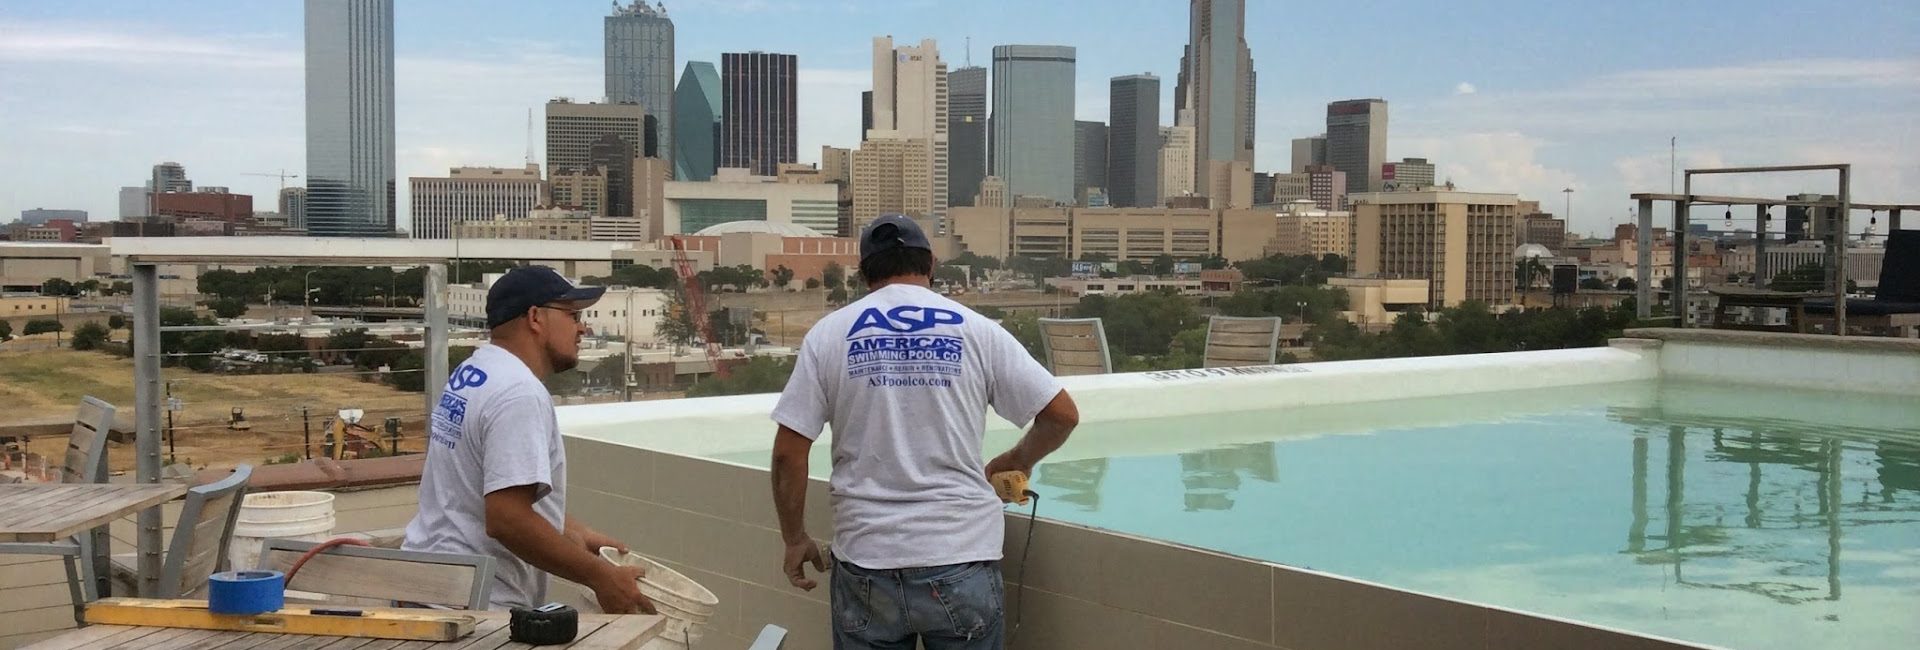 ASP – America’s Swimming Pool Company of Dallas 4